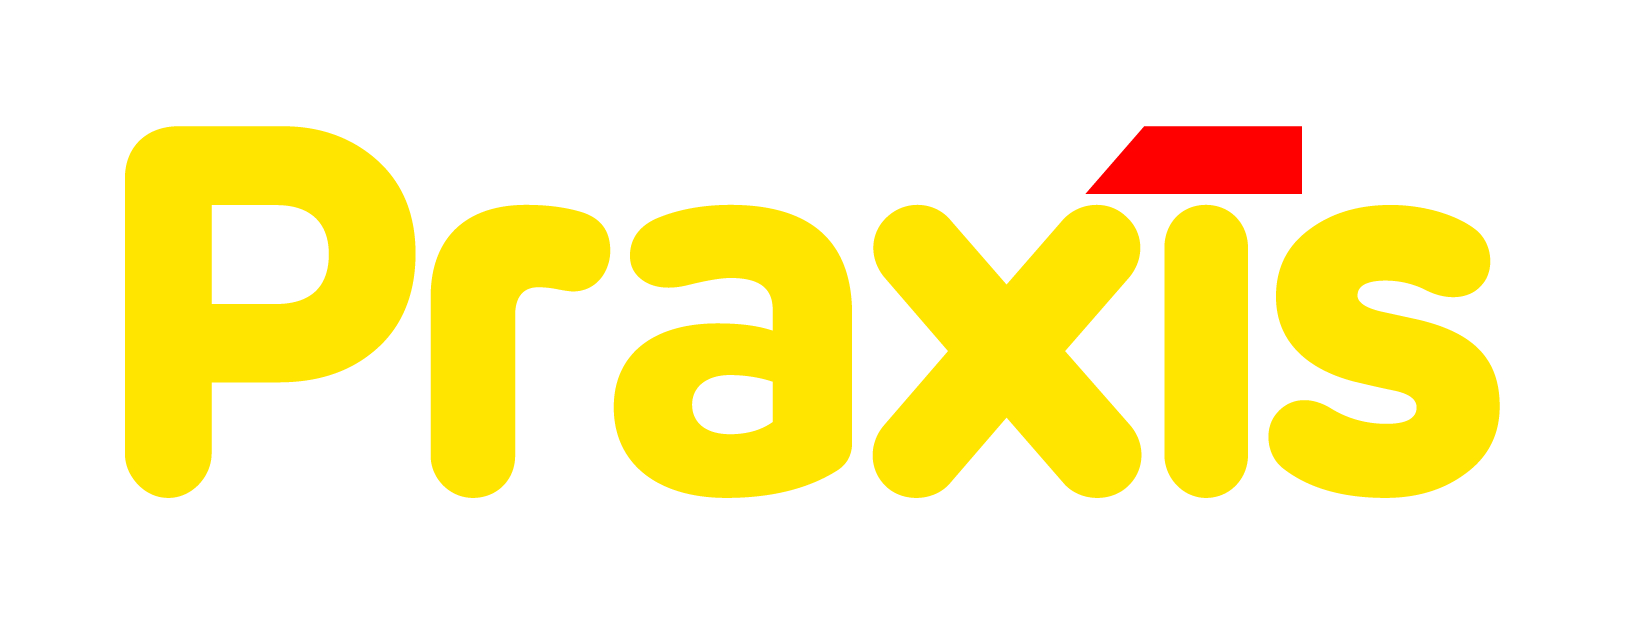 Nieuwe_Praxis_logo